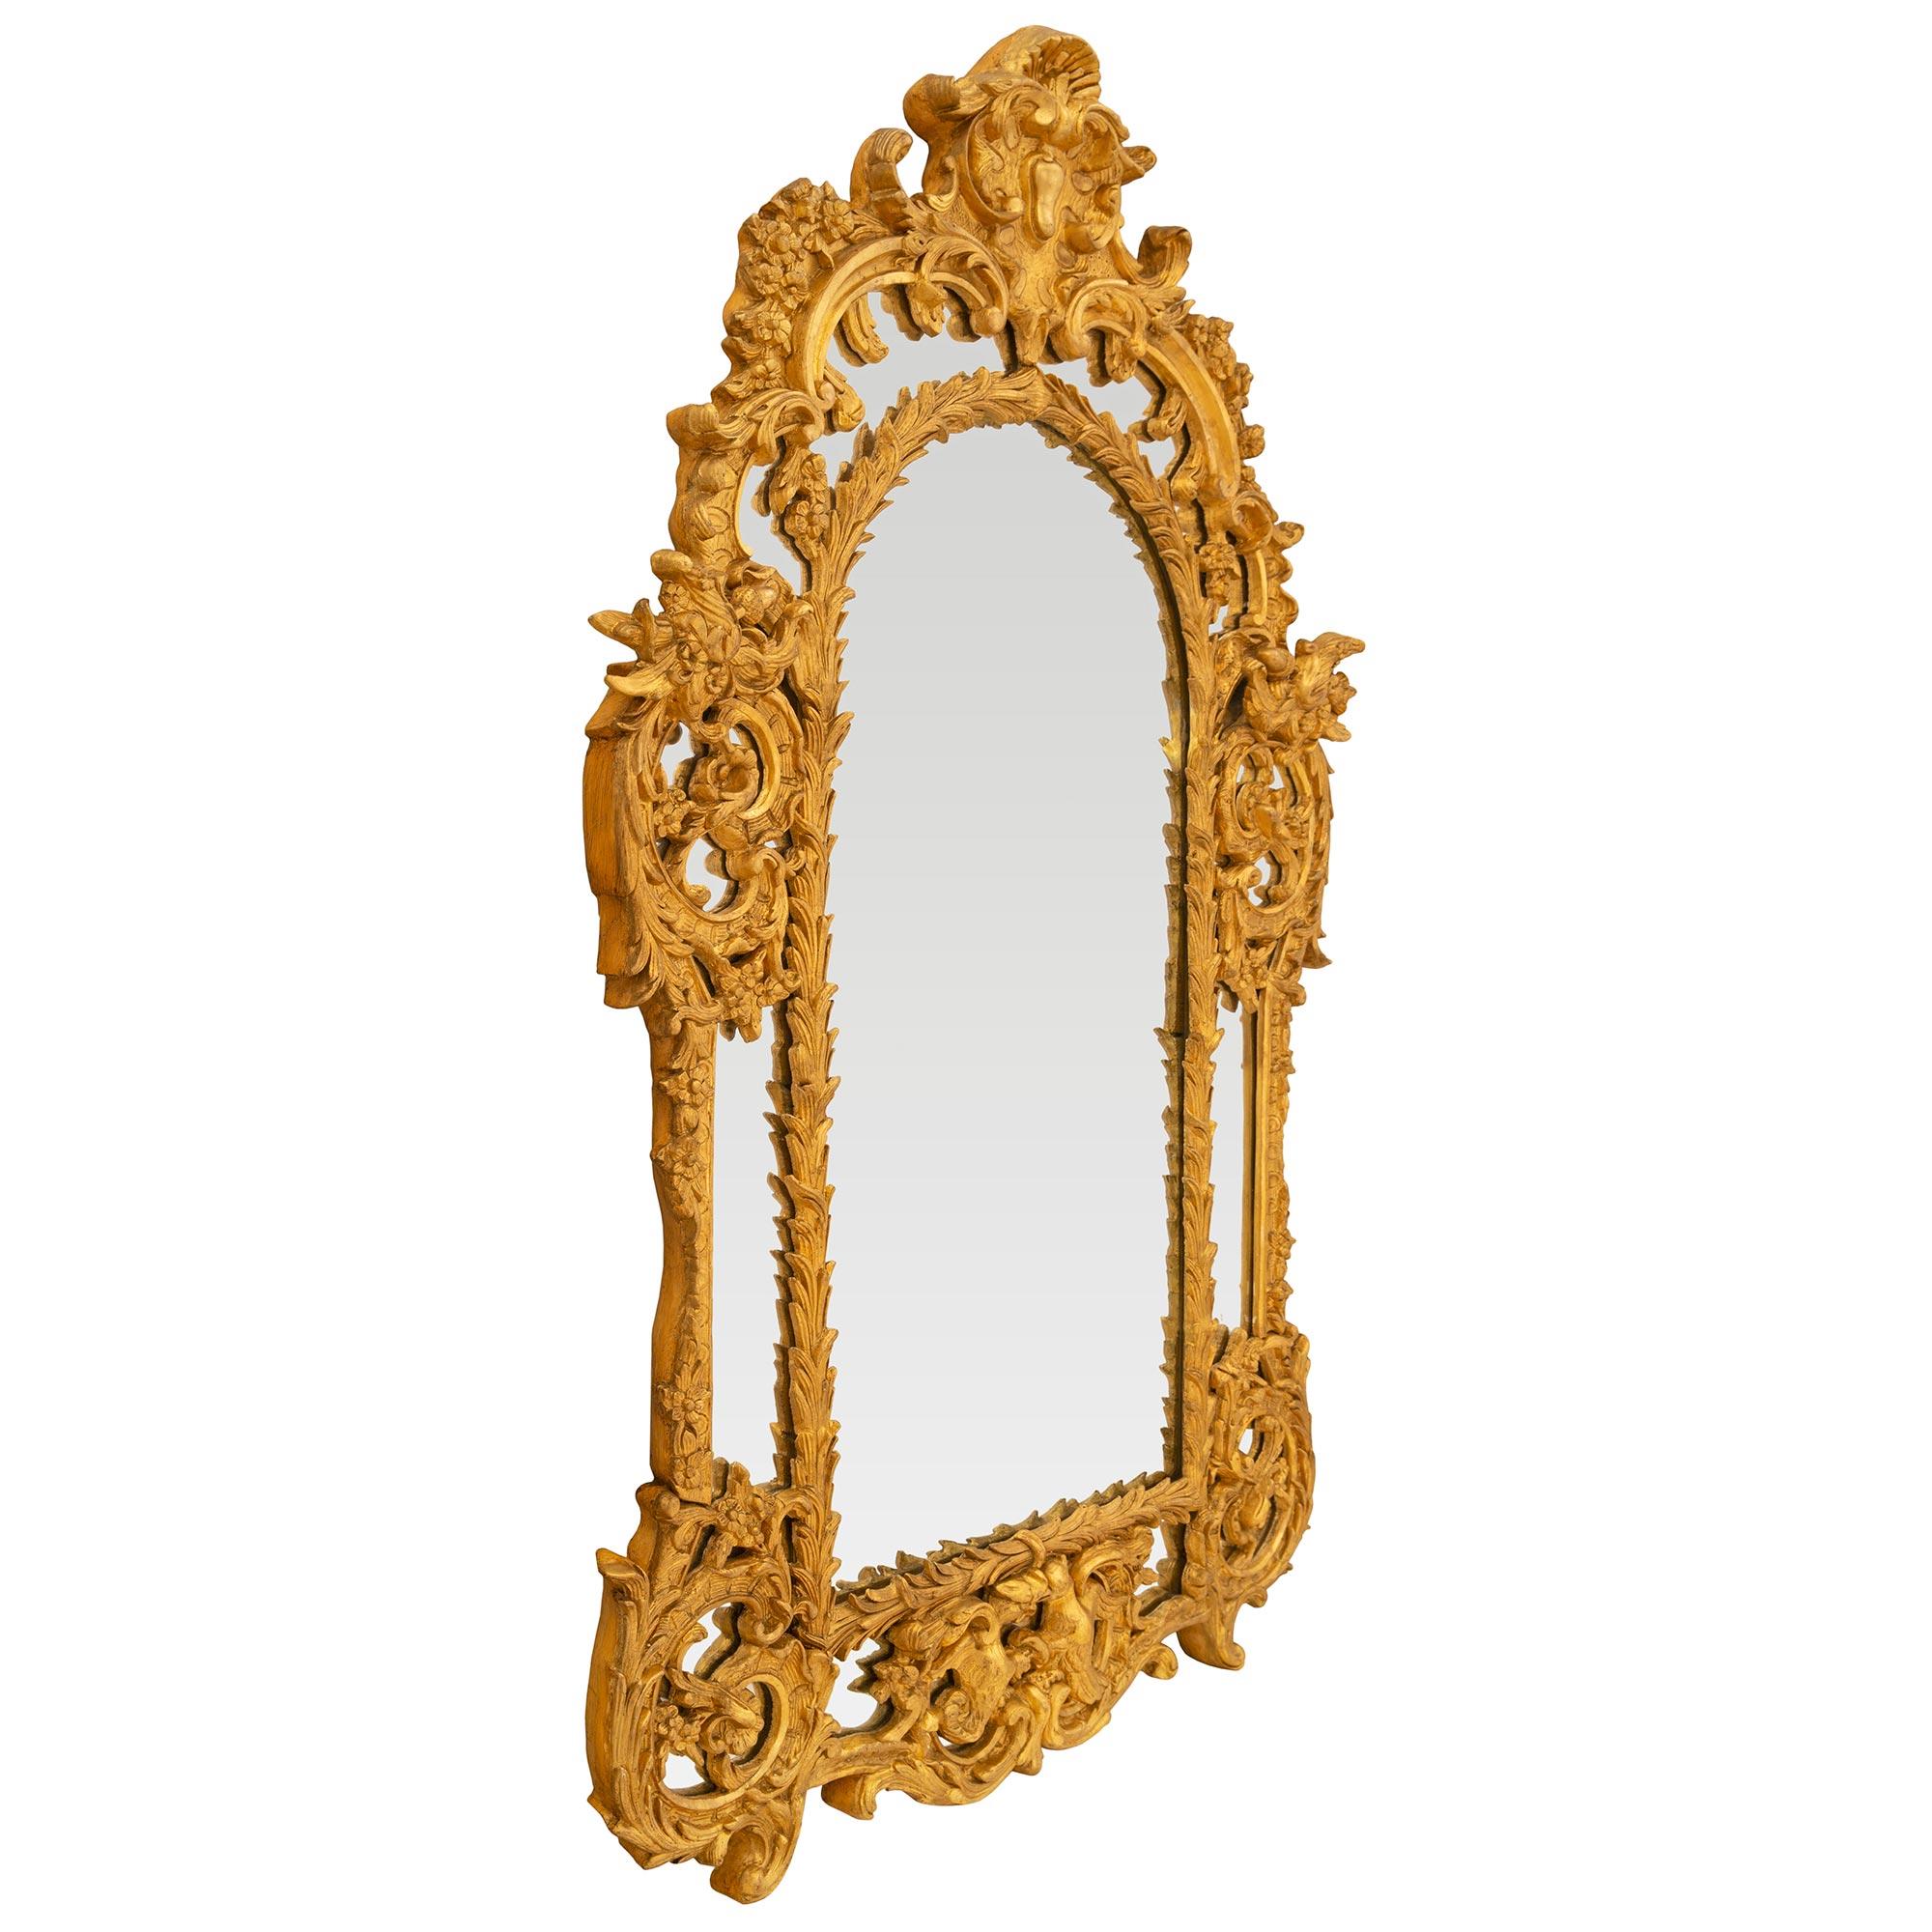 Eine schöne italienische 19. Jahrhundert Regence st. Doppel gerahmt Vergoldung Spiegel. Der Spiegel behält alle seine ursprüngliche Spiegelplatten im gesamten mit der zentralen Spiegelplatte in einem reich geschnitzten Wrap-around-Blatt-Band